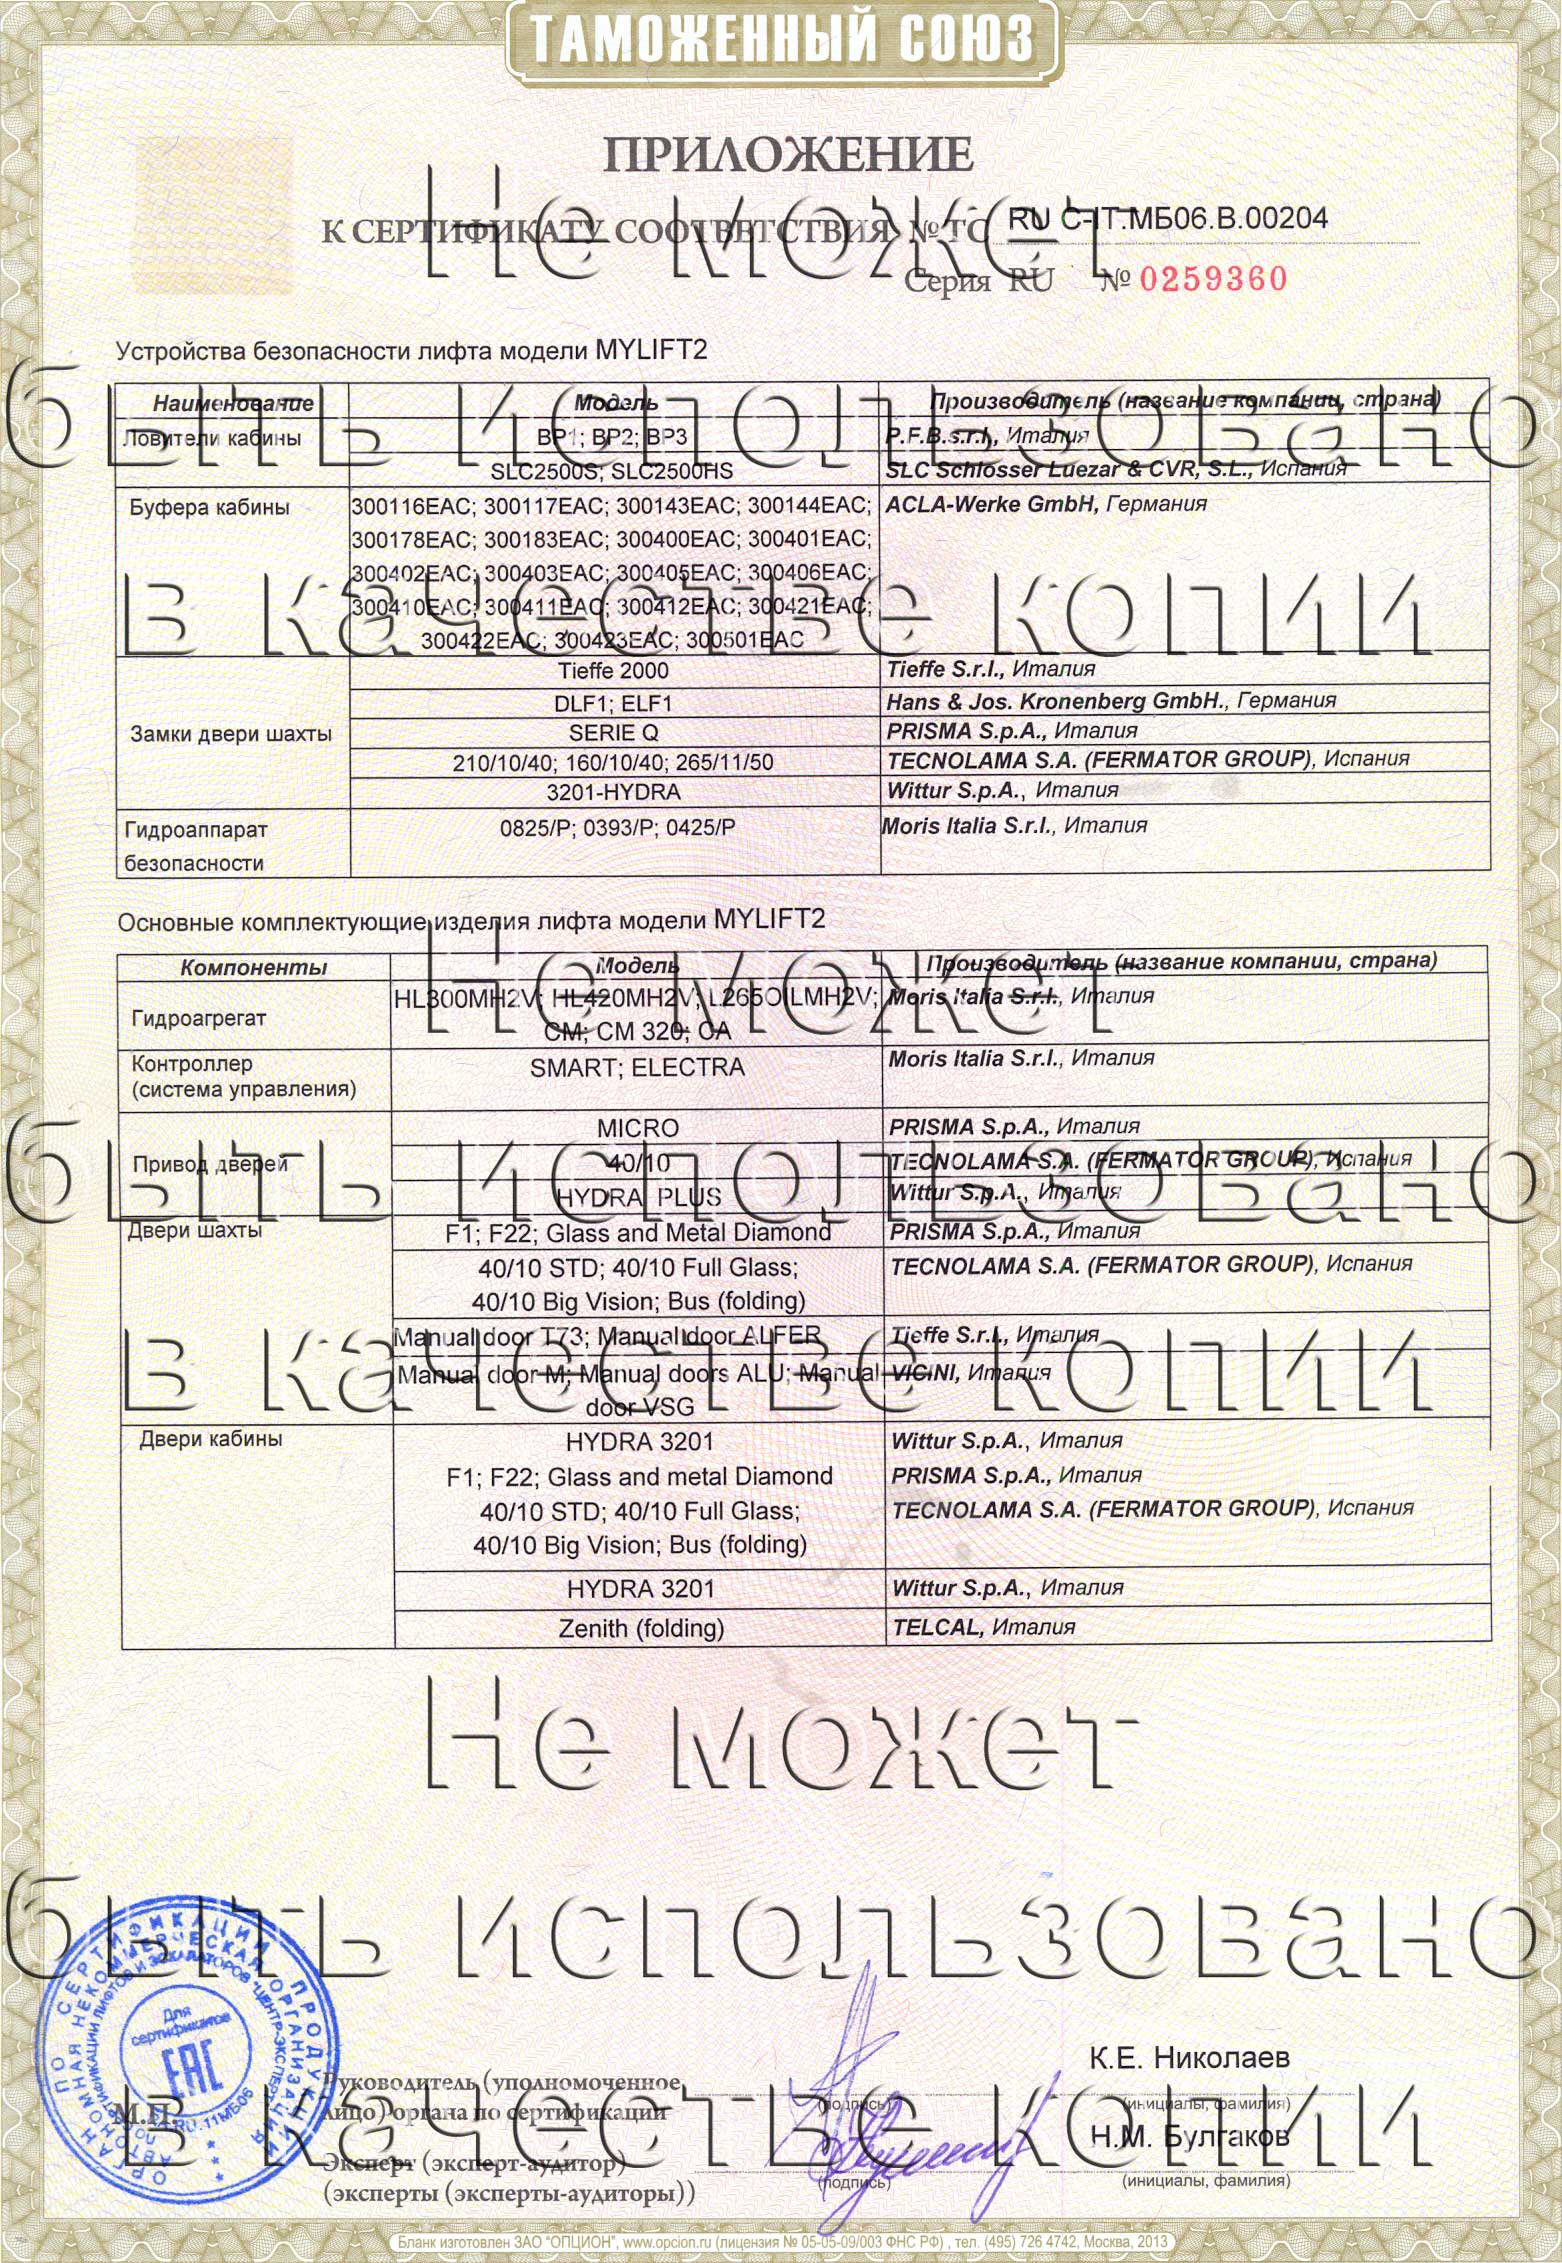 Приложение к сертификату № RU С-IT.МБ06.B.00204